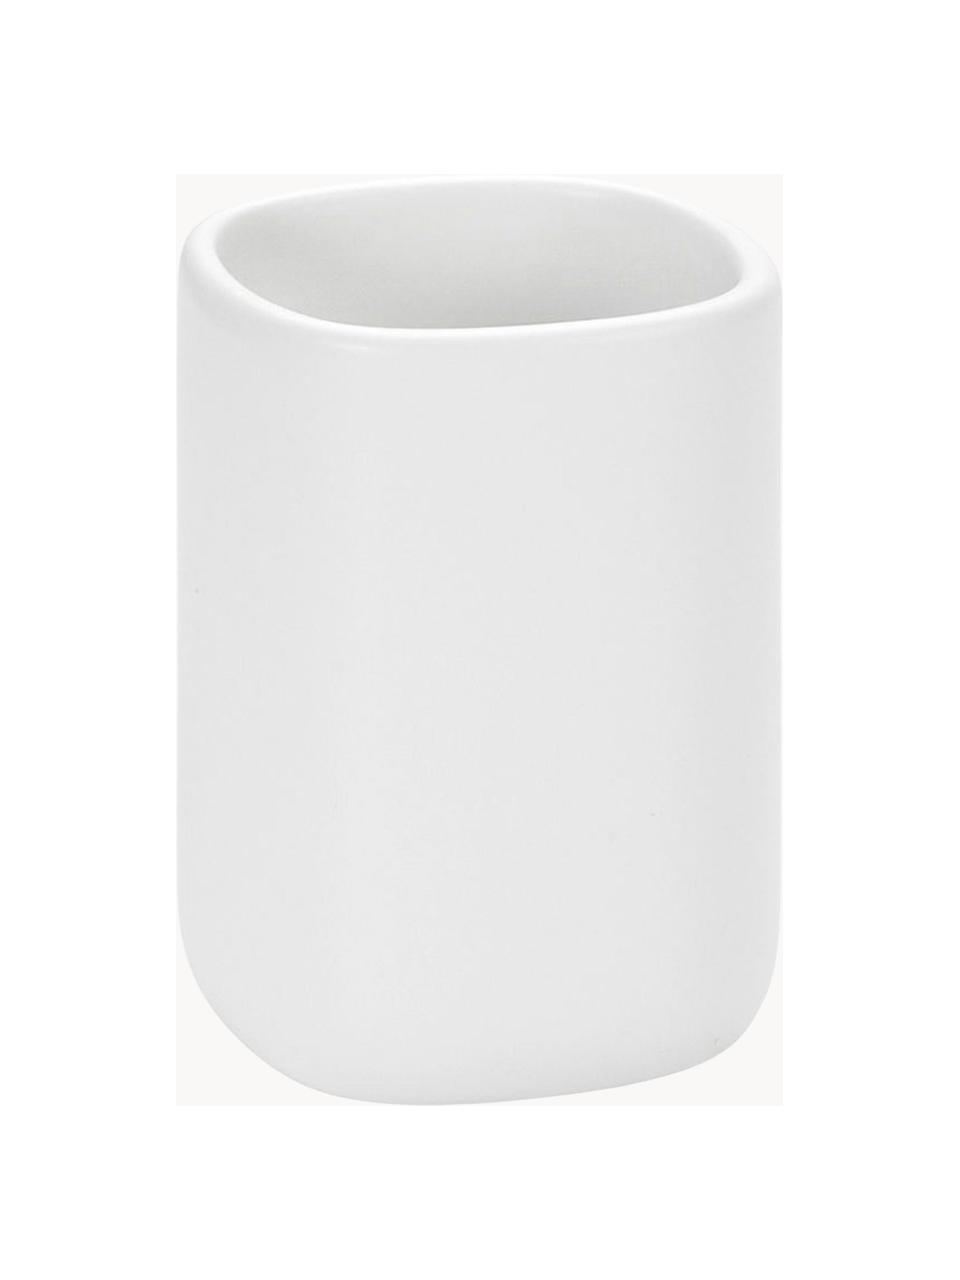 Keramik-Zahnputzbecher Wili, Keramik, Weiss, Ø 7 x H 11 cm